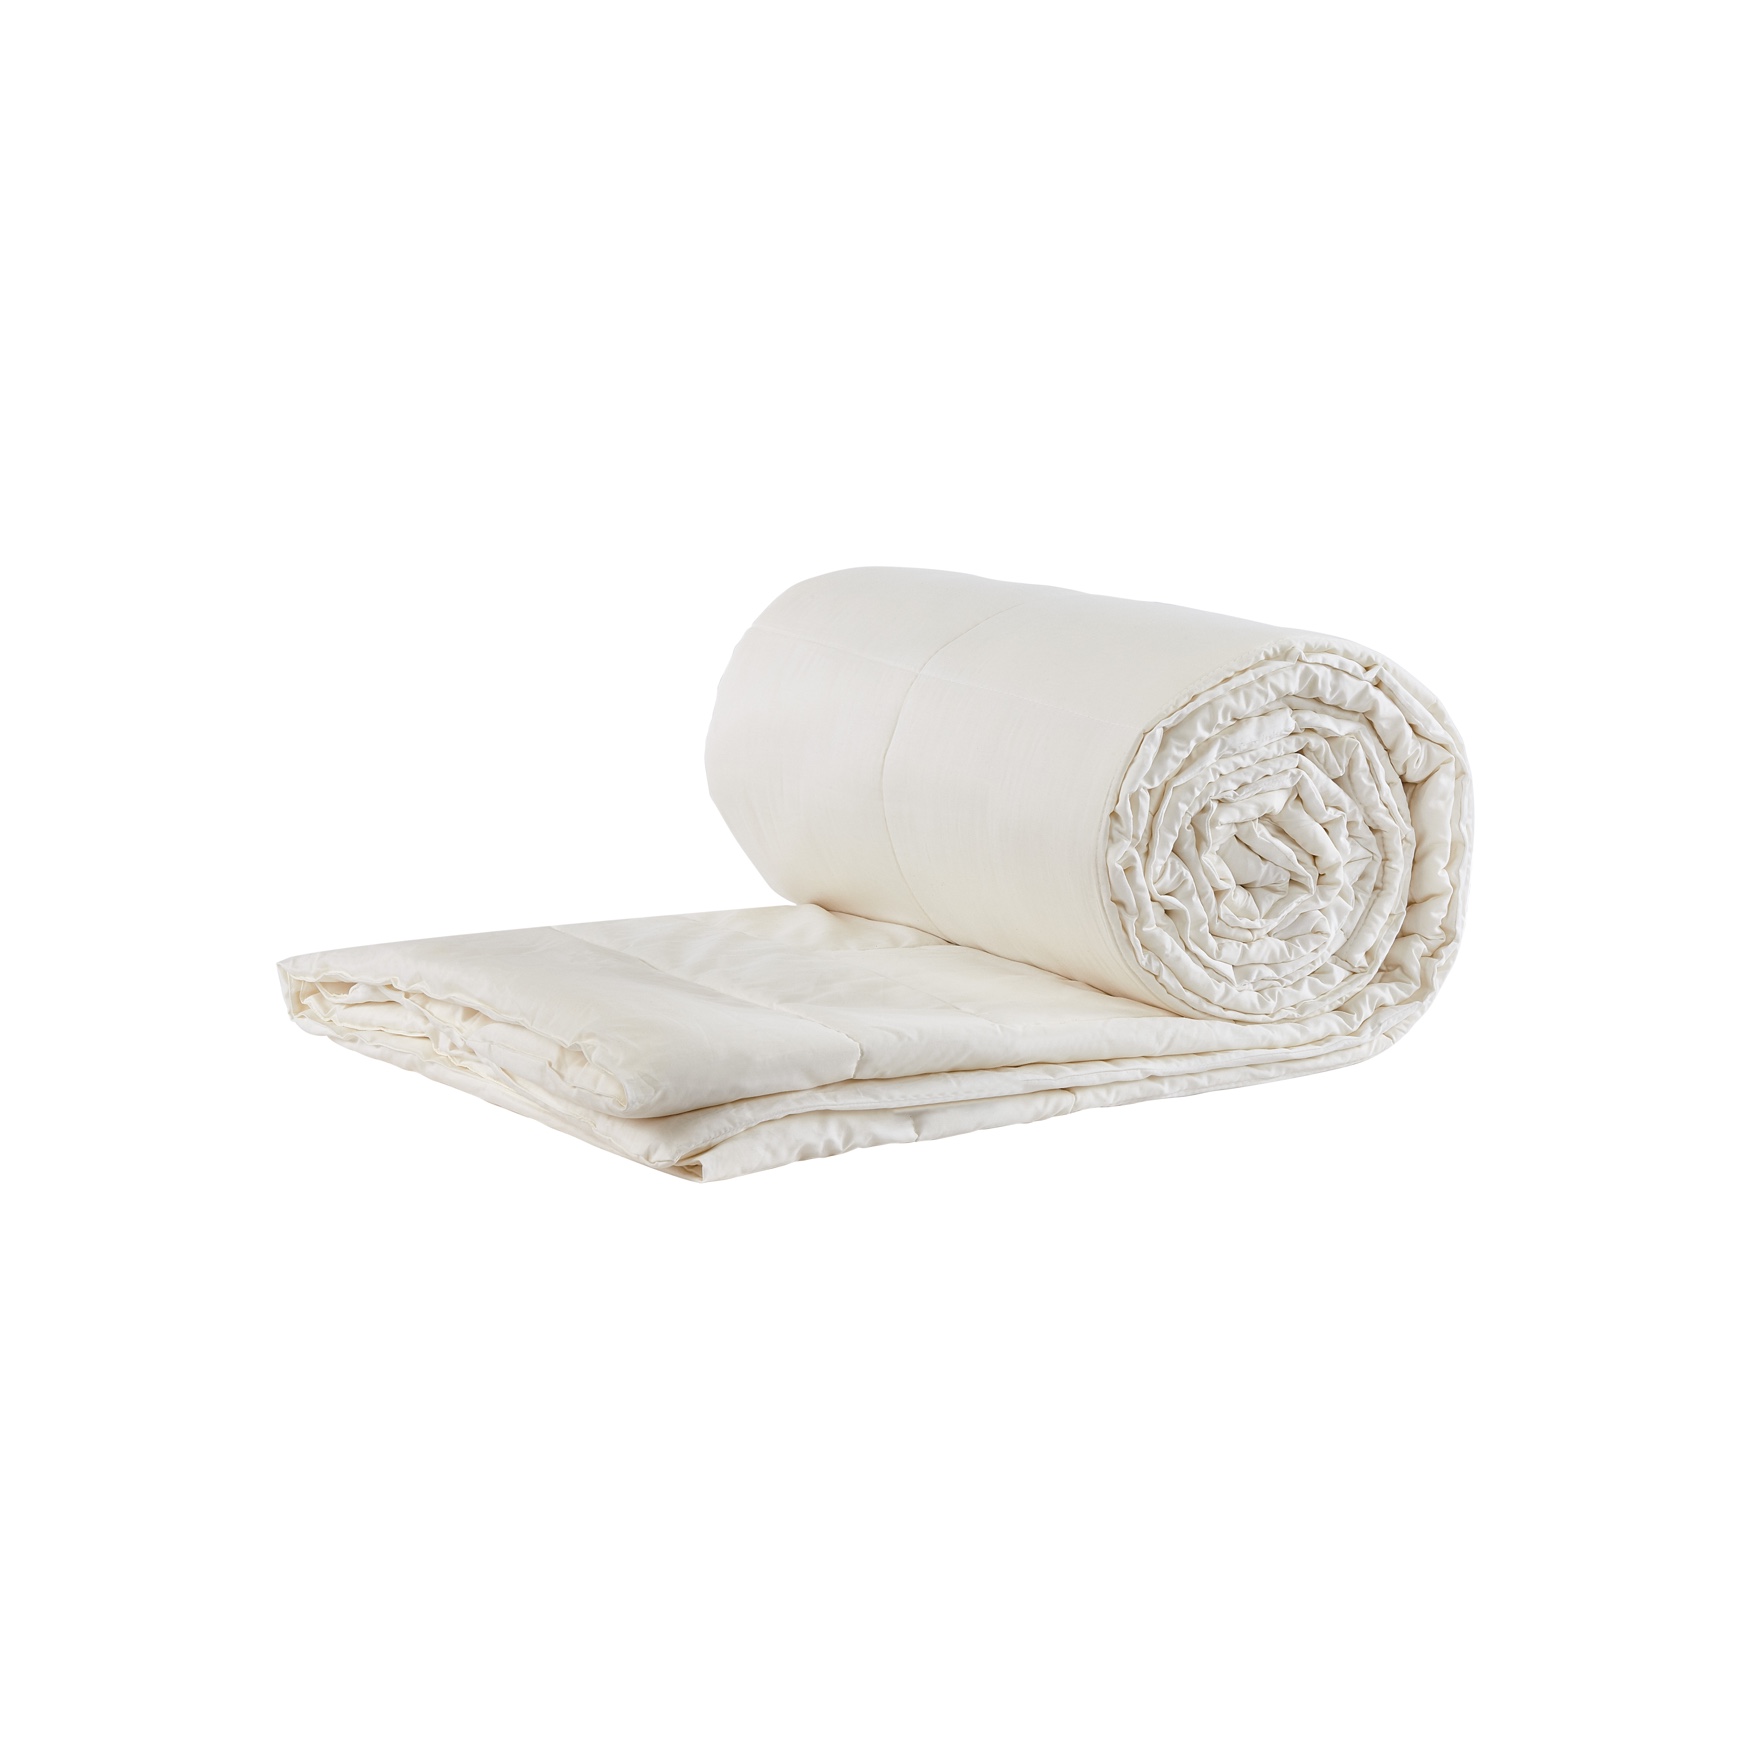 myComforter - light, 100% Washable Wool Comforter, 